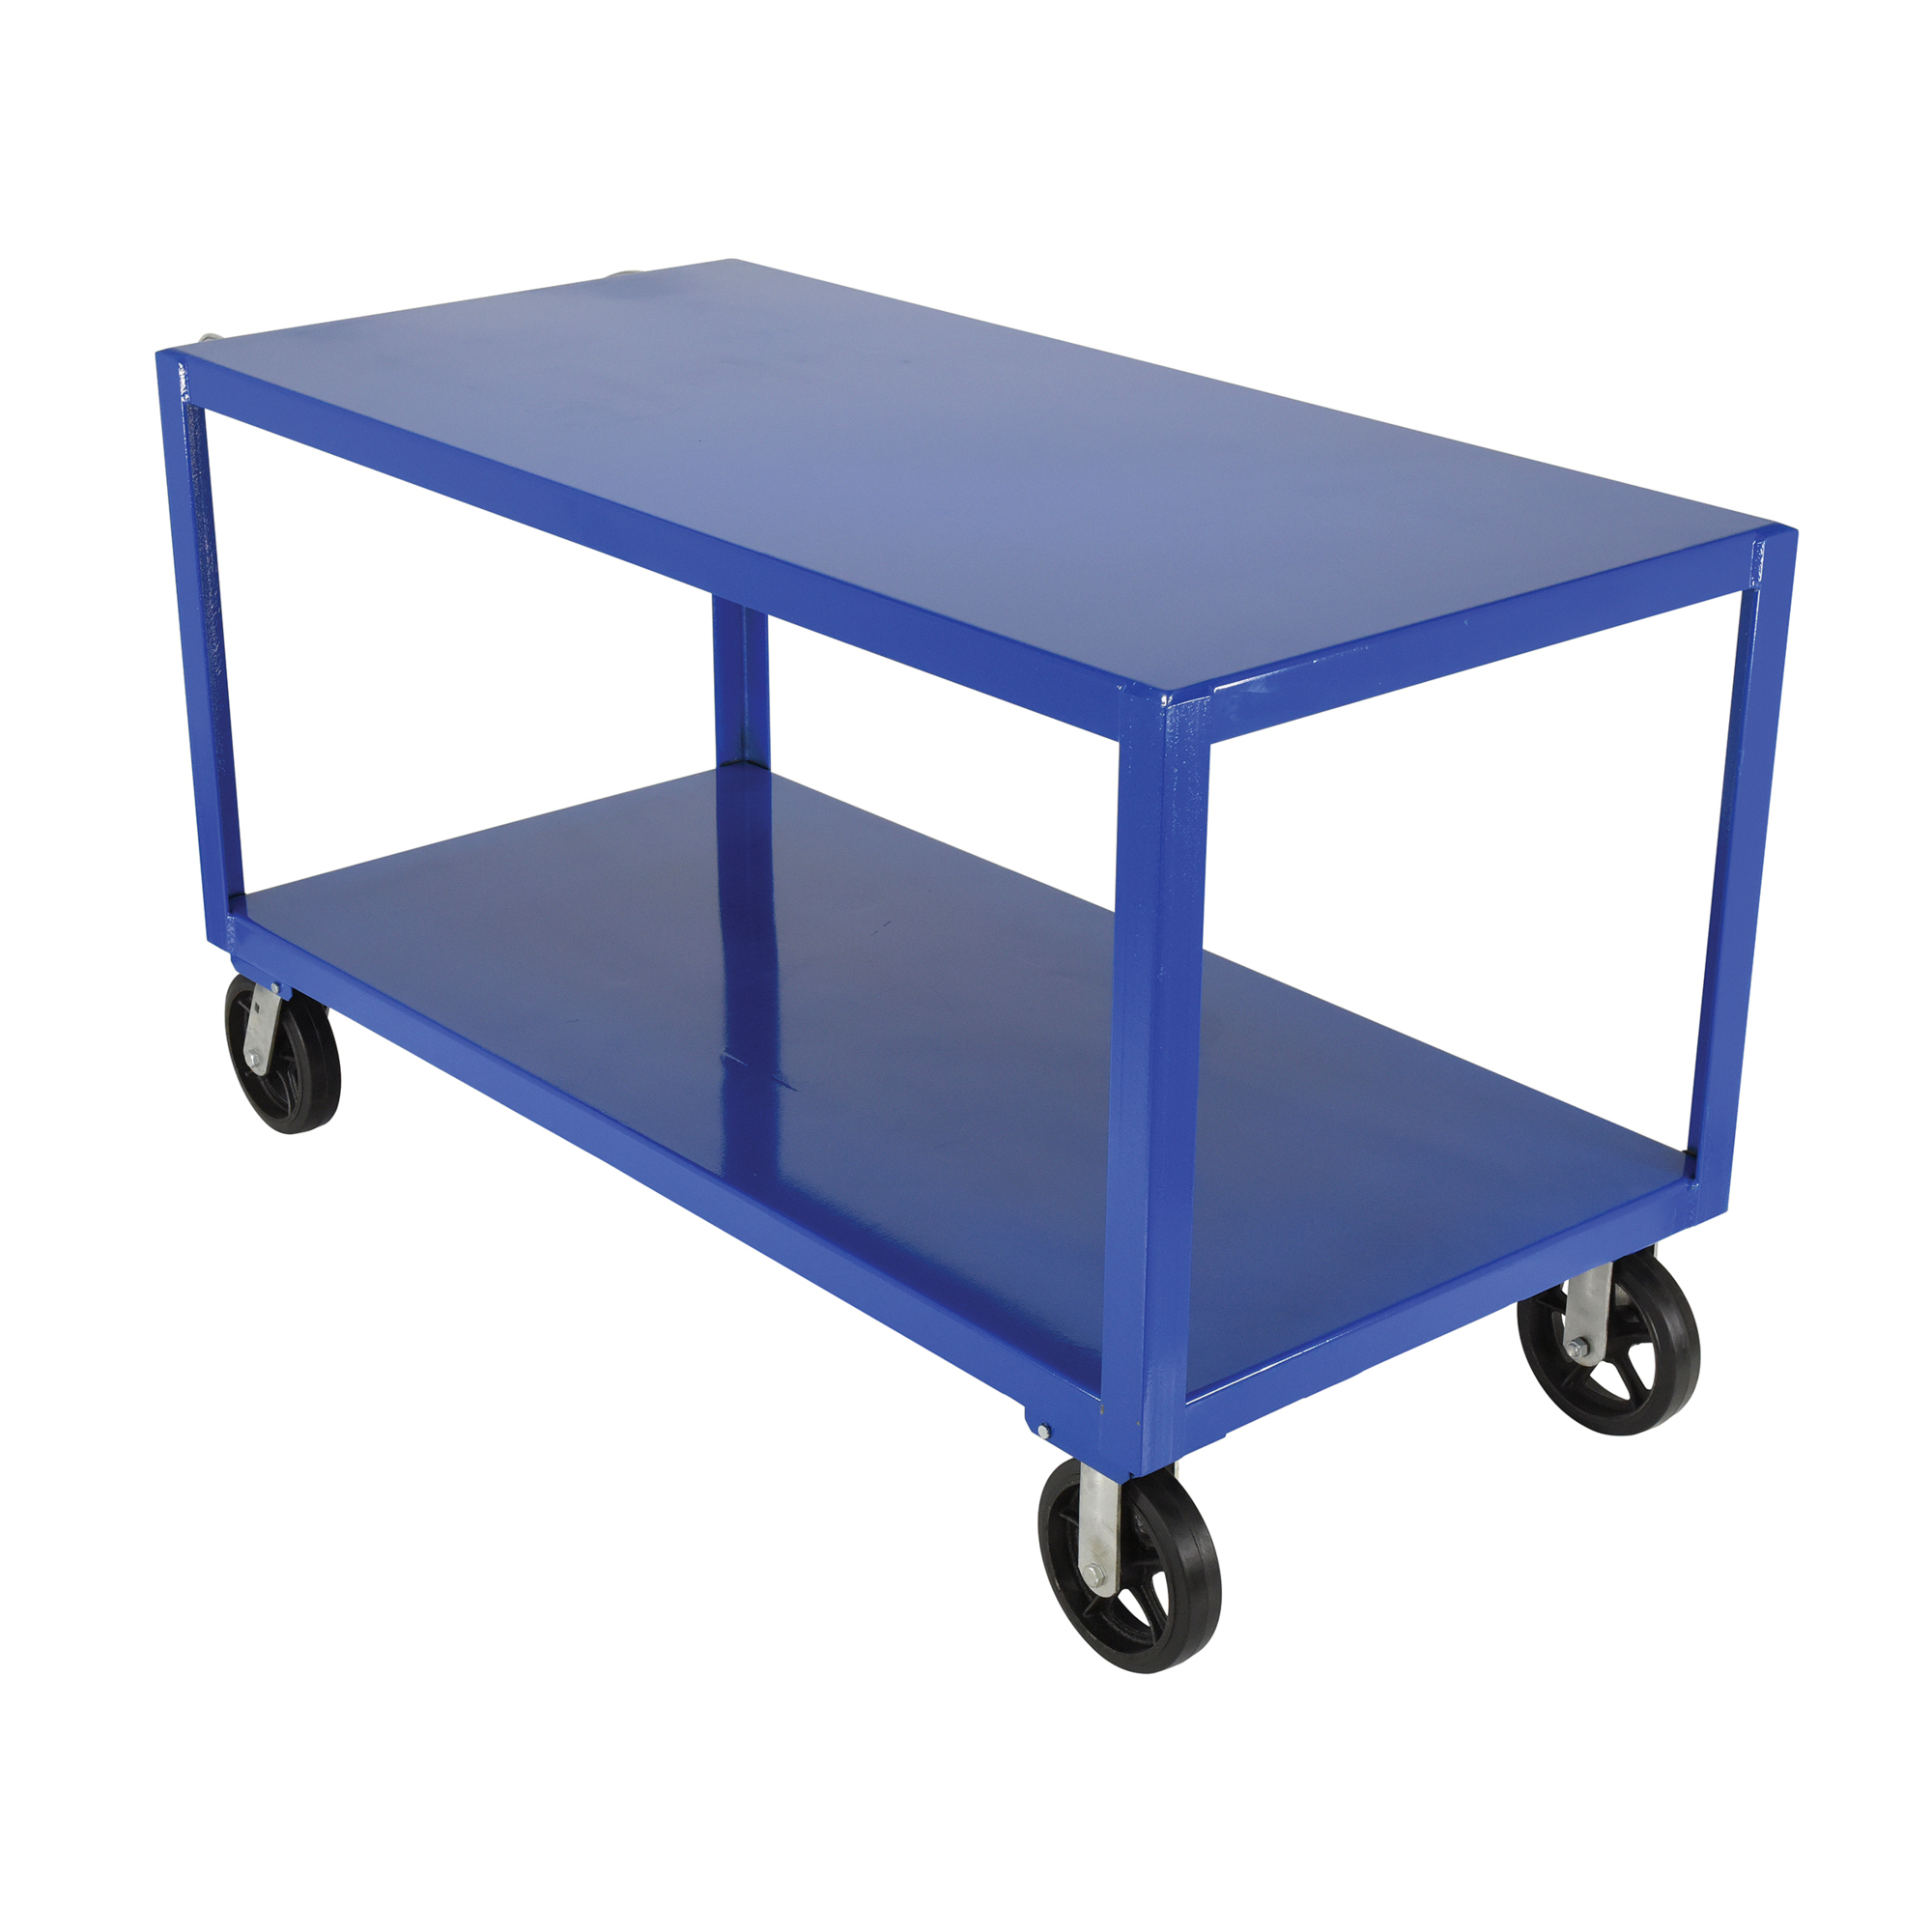 Vestil, Platform ergo handle cart mold-on-rubber casters, Total Capacity 2400 lb, Shelves (qty.) 2 Model DH-MR2-3060